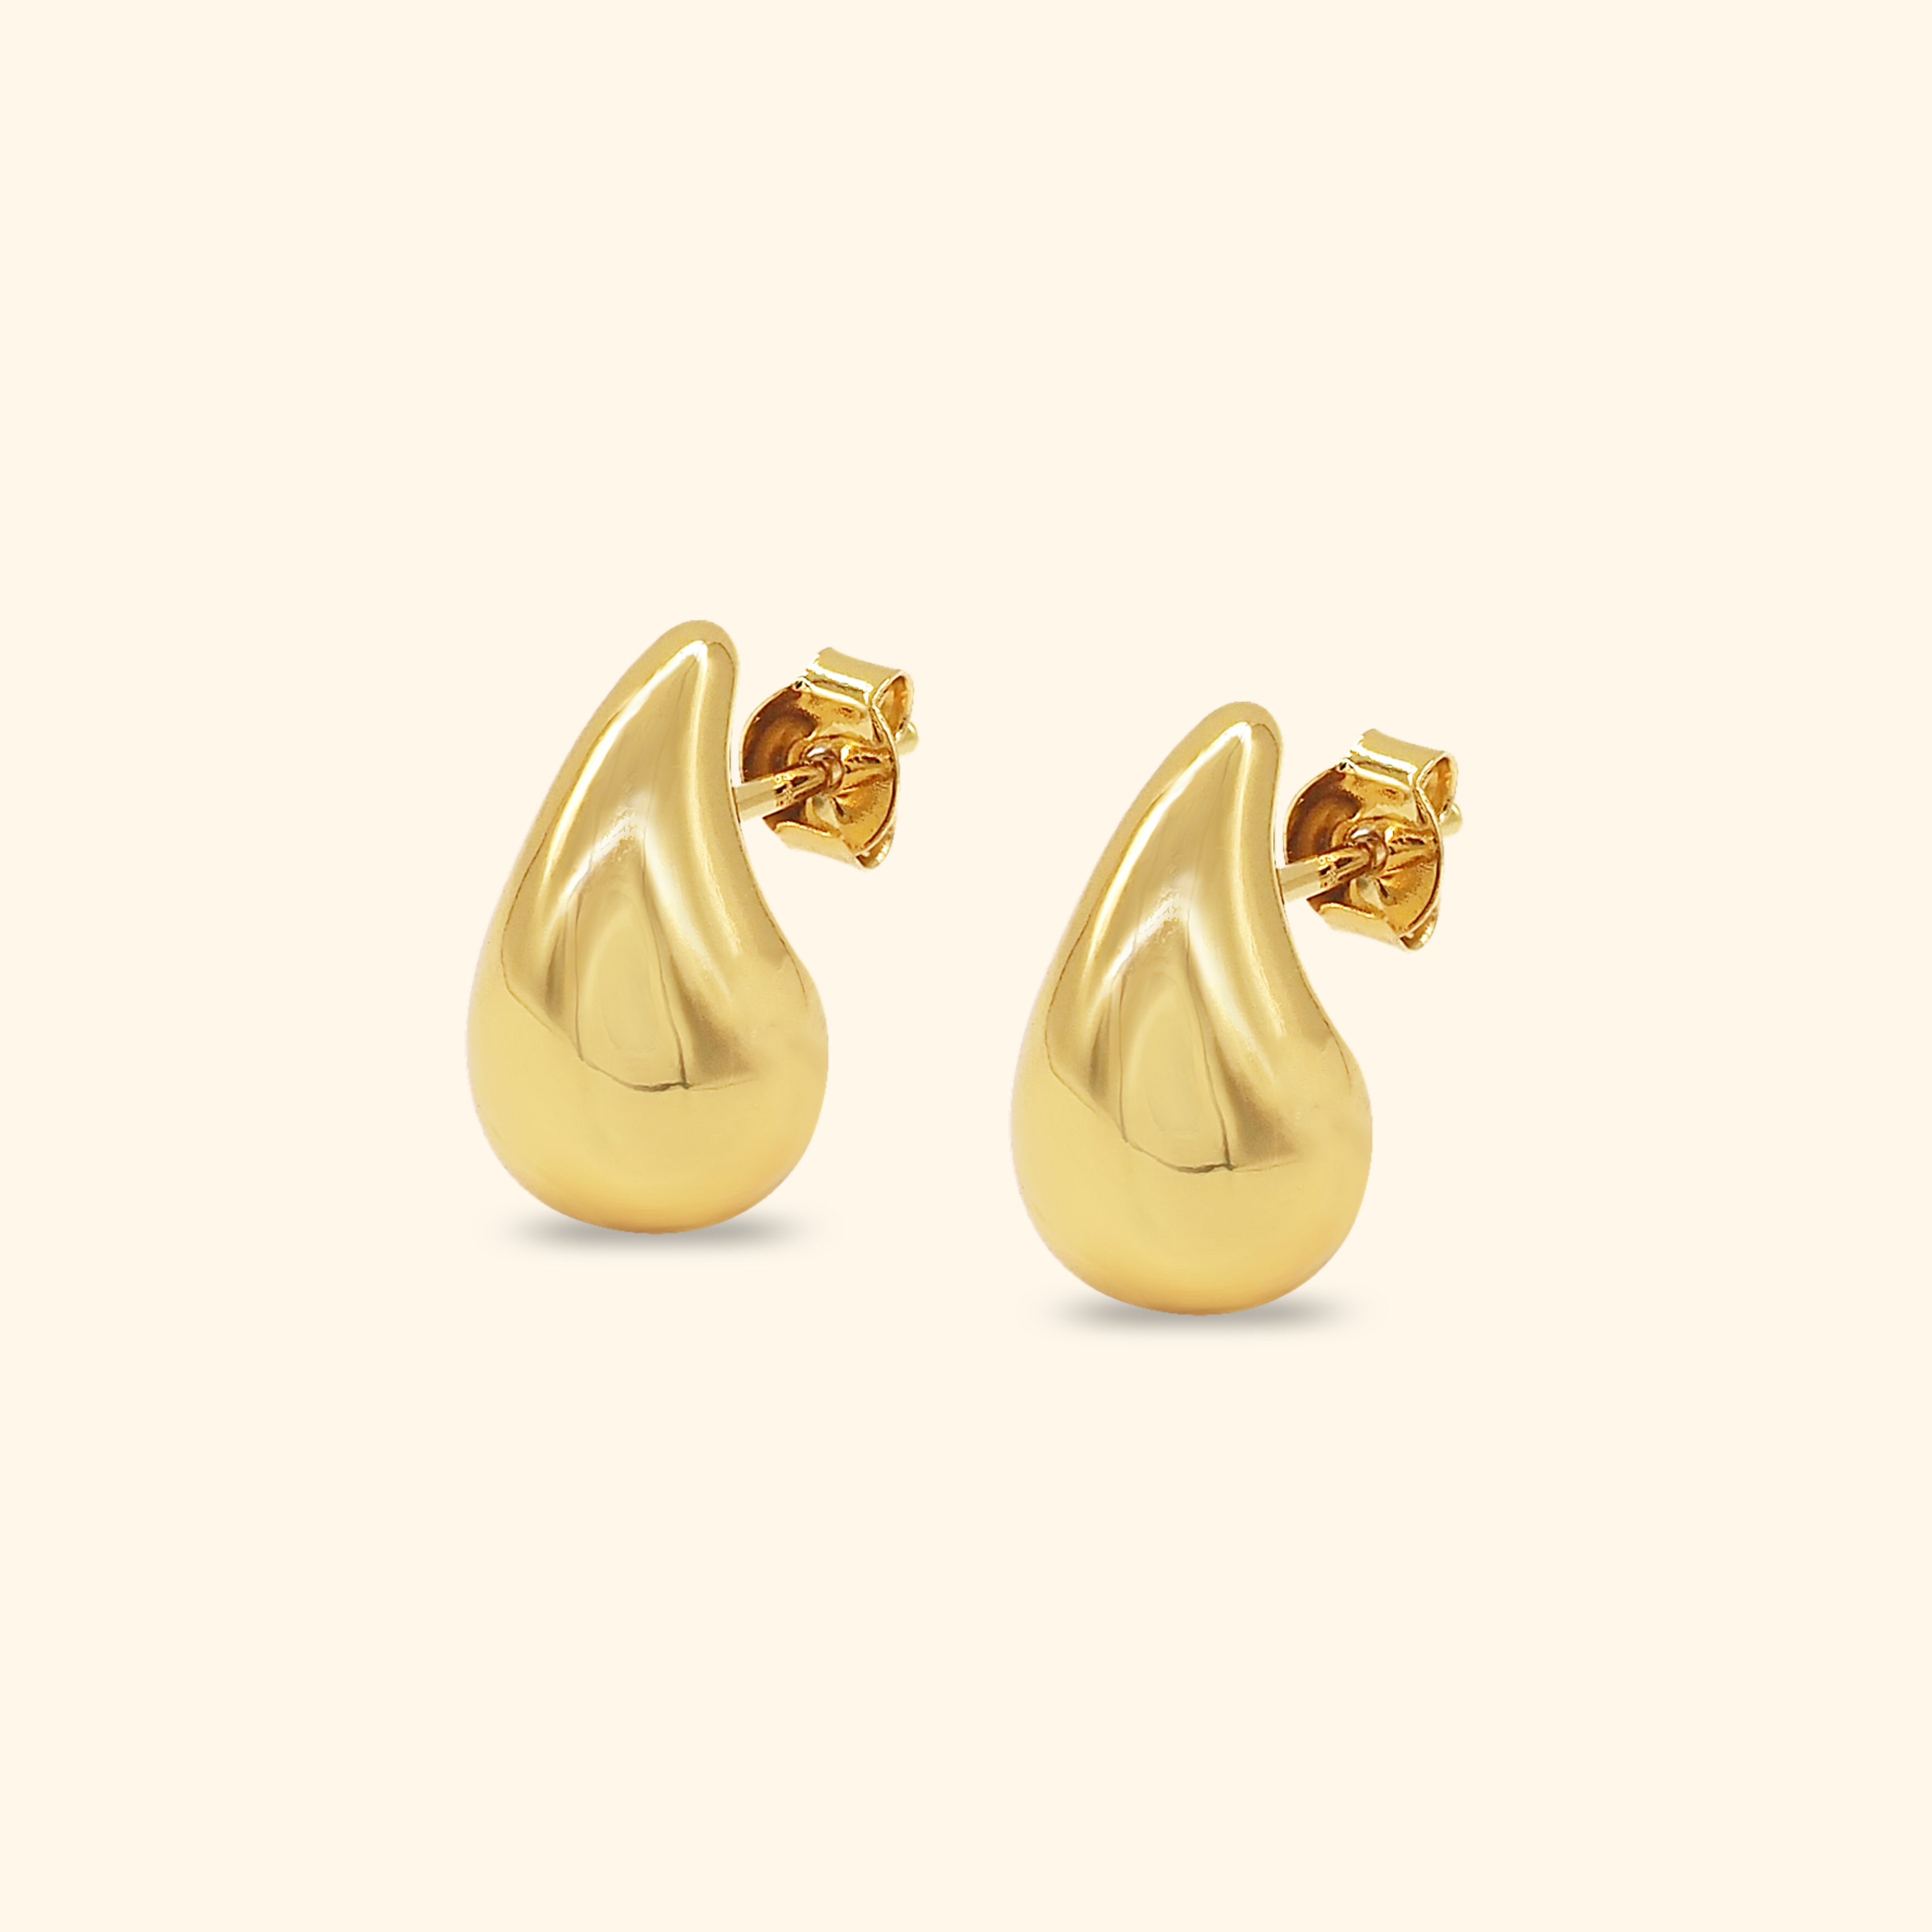 Water Droplet Stud Earrings Size M